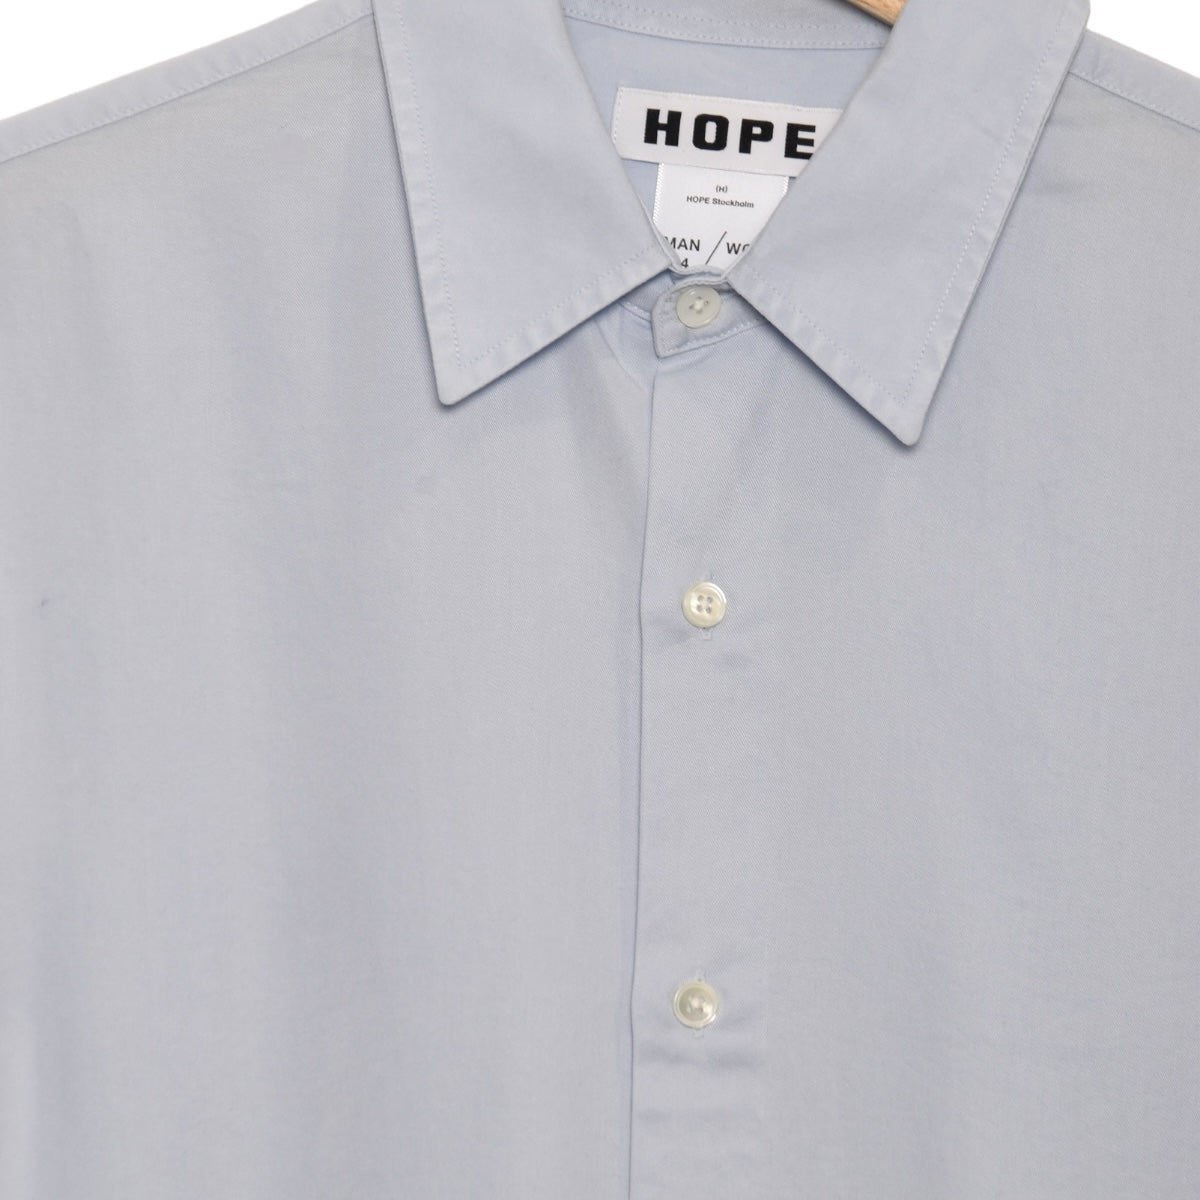 Hope Air Clean Shirt light blue